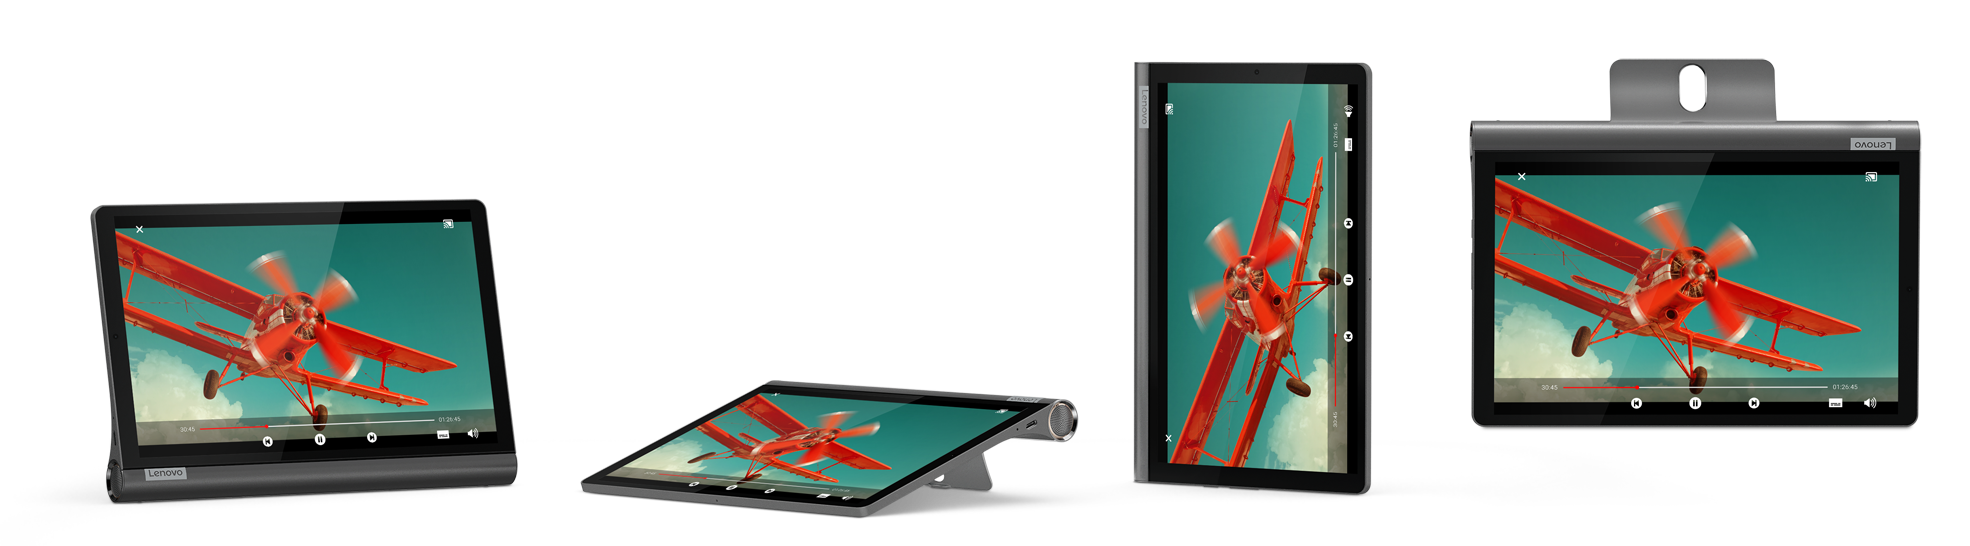 Lenovo Yoga Smart Tab_Usage Modes